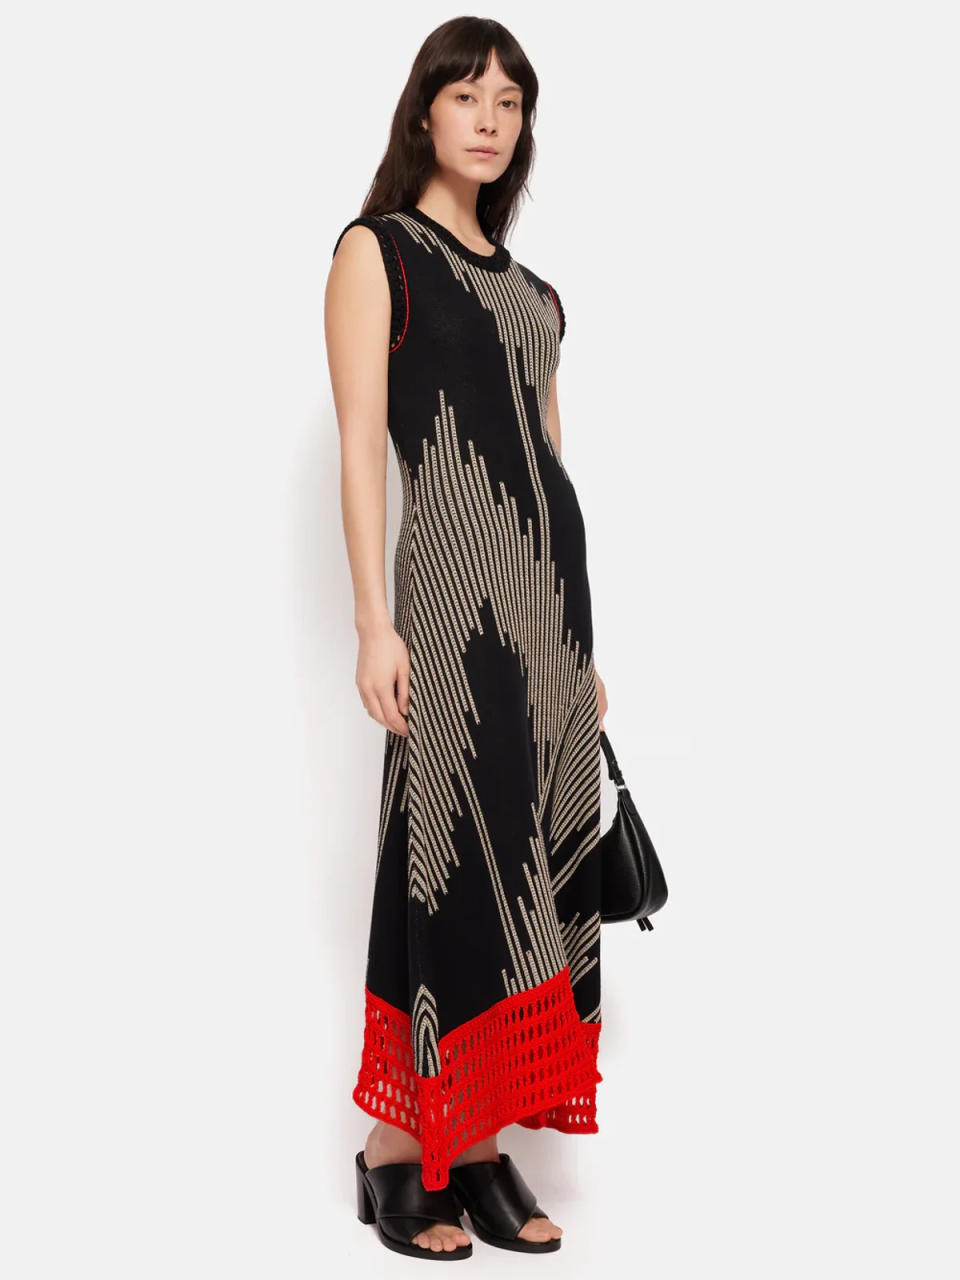 Πλεκτό φόρεμα Ikat ζακάρ, 295 £, jigsaw-online.com (Jigsaw)